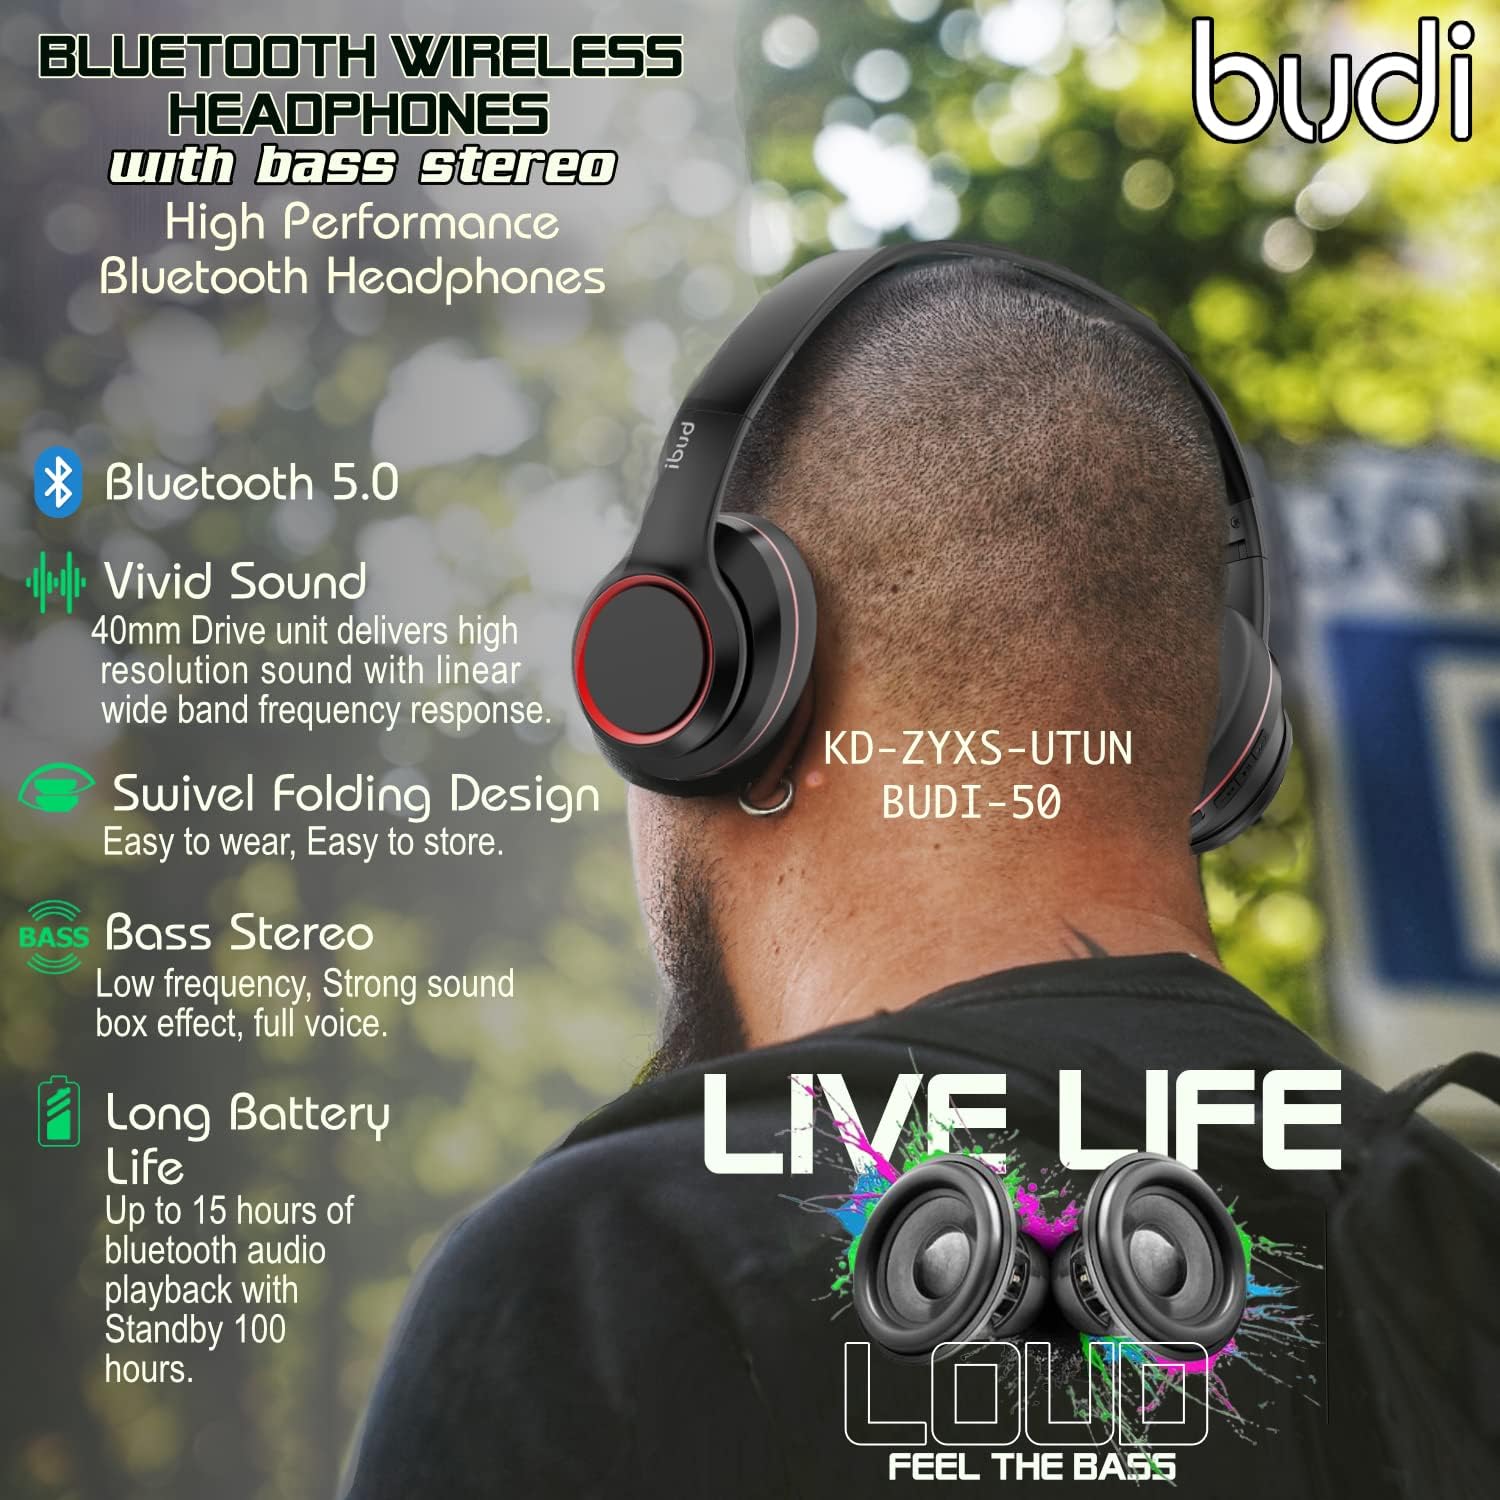 Kabelloser Kopfhörer mit Bass-Stereo, faltbarer kabelloser Bluetooth-Kopfhörer von Budi